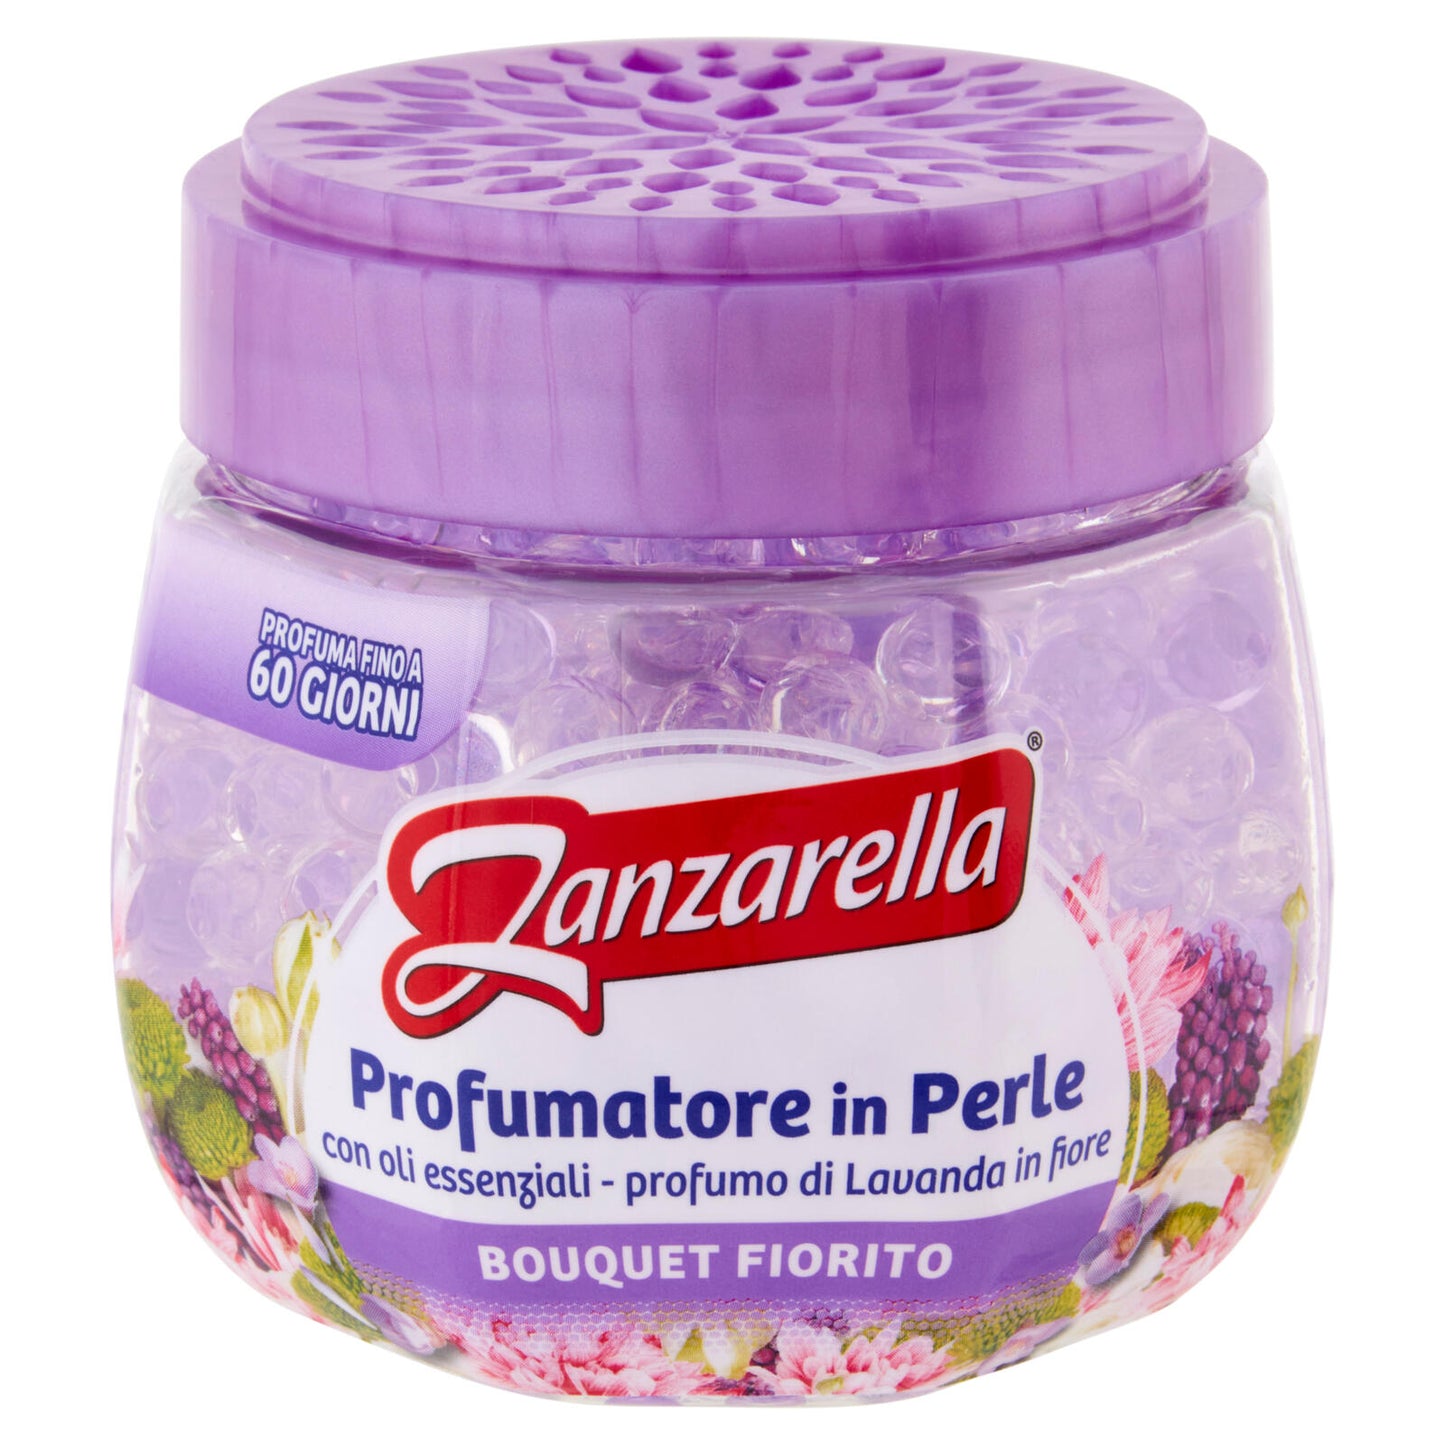 Zanzarella Profumatore in Perle Bouquet Fiorito 170 g